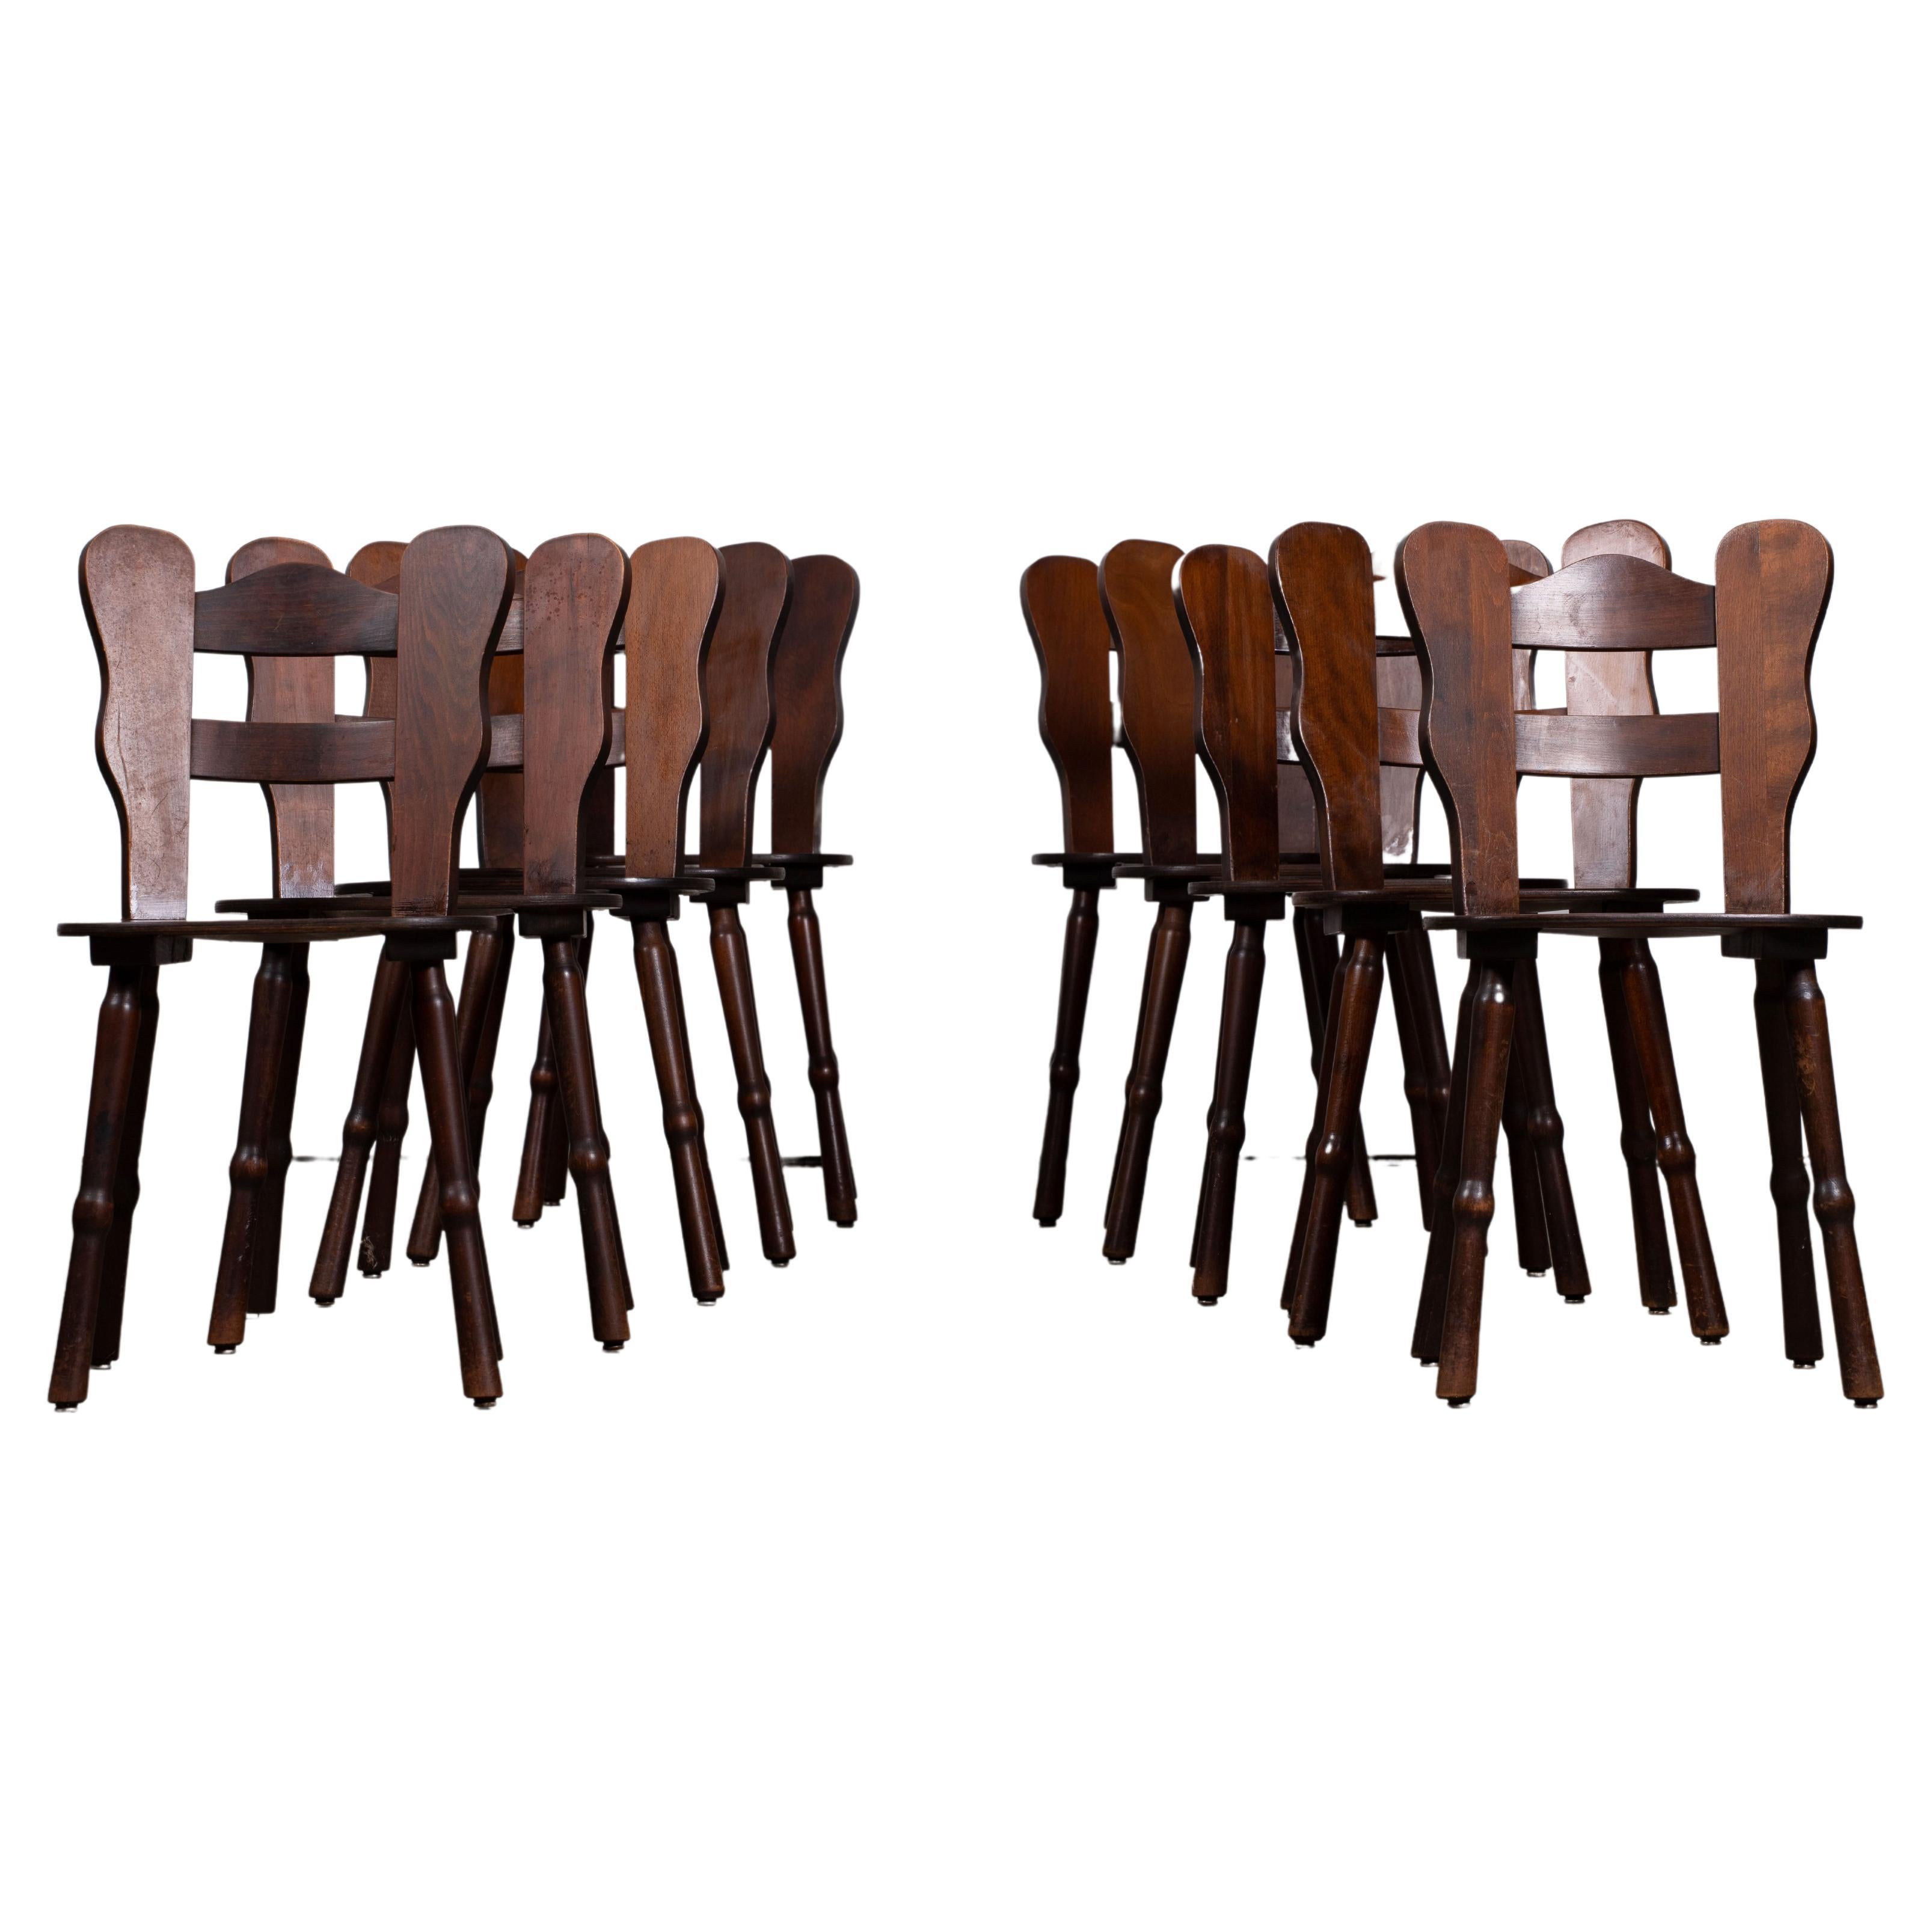 Cet ensemble de six chaises de salle à manger brutalistes françaises en chêne massif a été créé dans les années 1940.

